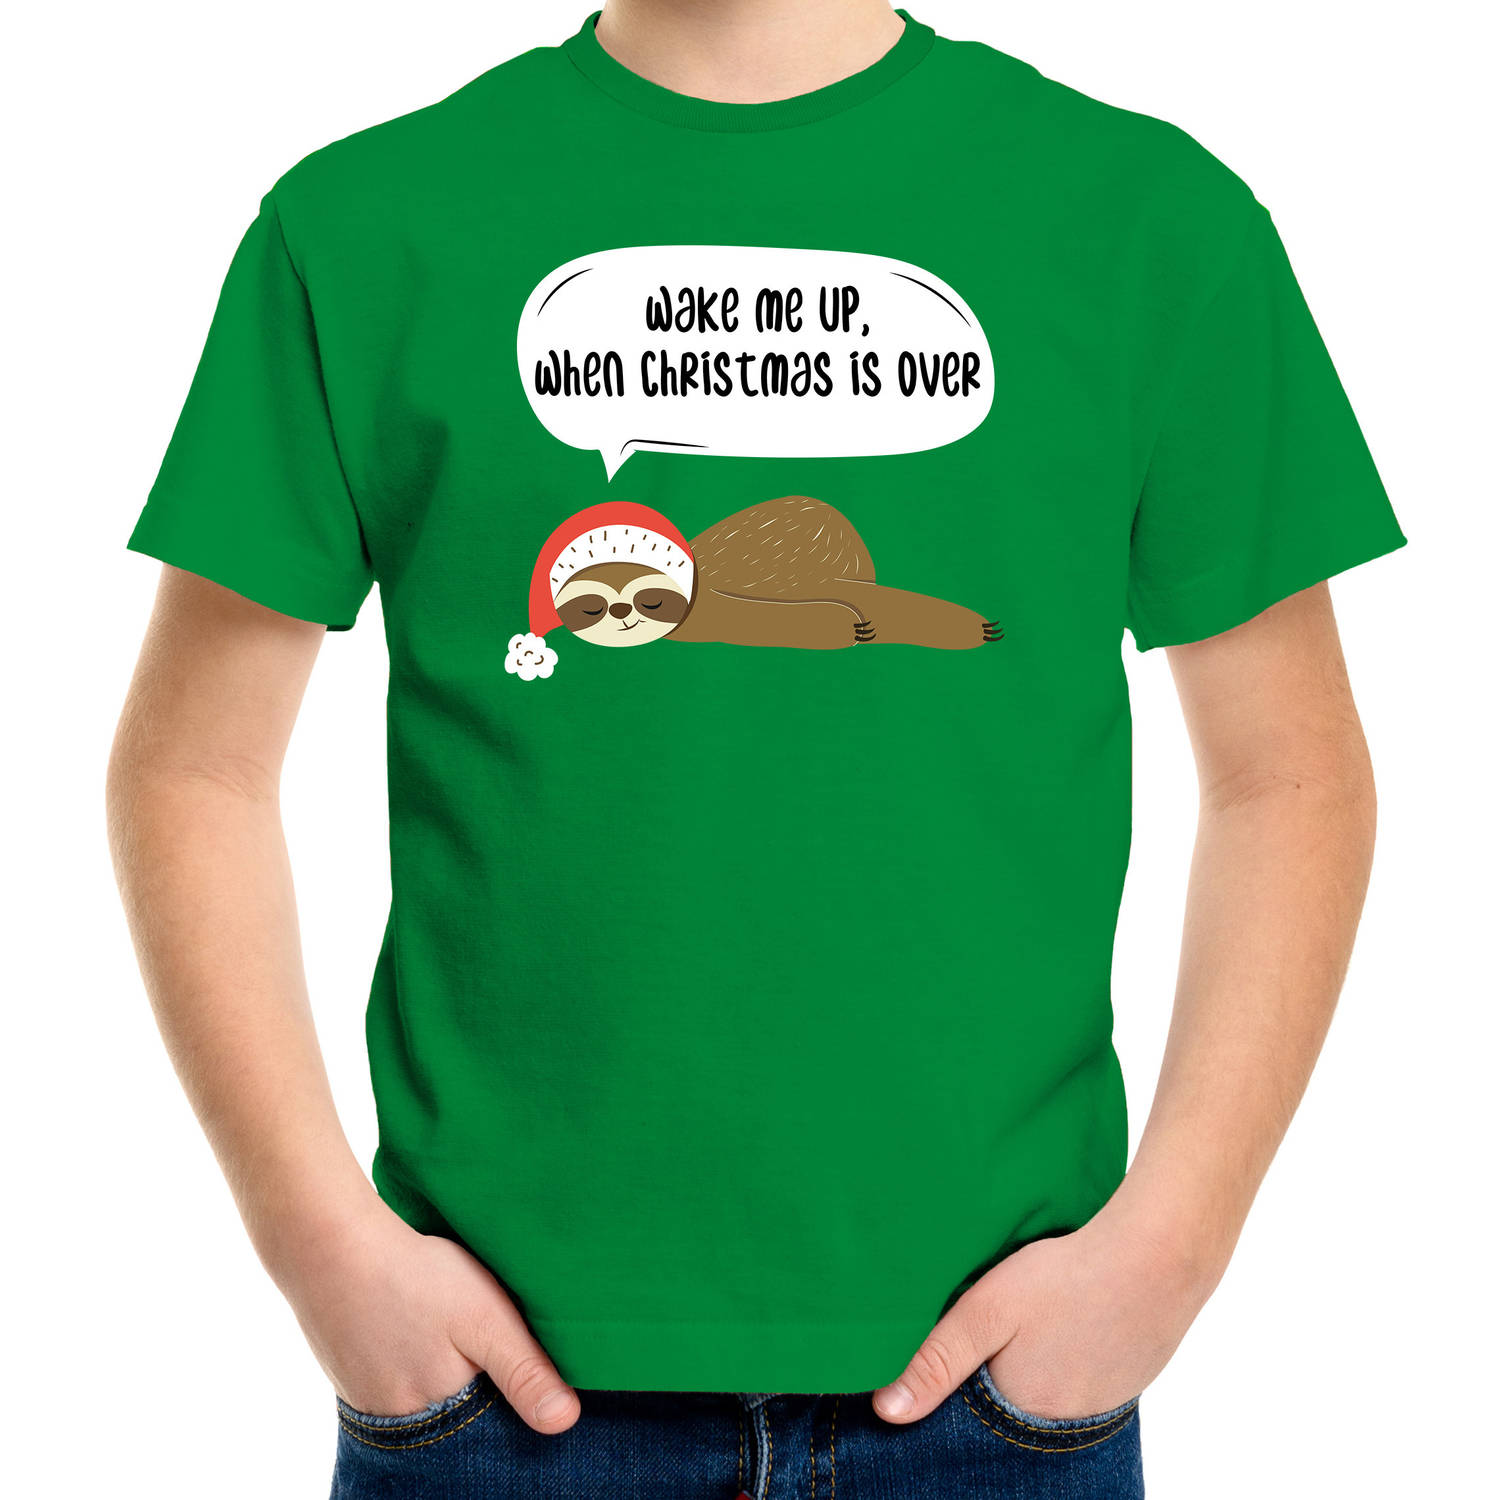 Groen Kerst shirt/ Kerstkleding met luiaard Wake me up when christmas is over voor kinderen M (116-134) - kerst t-shirts